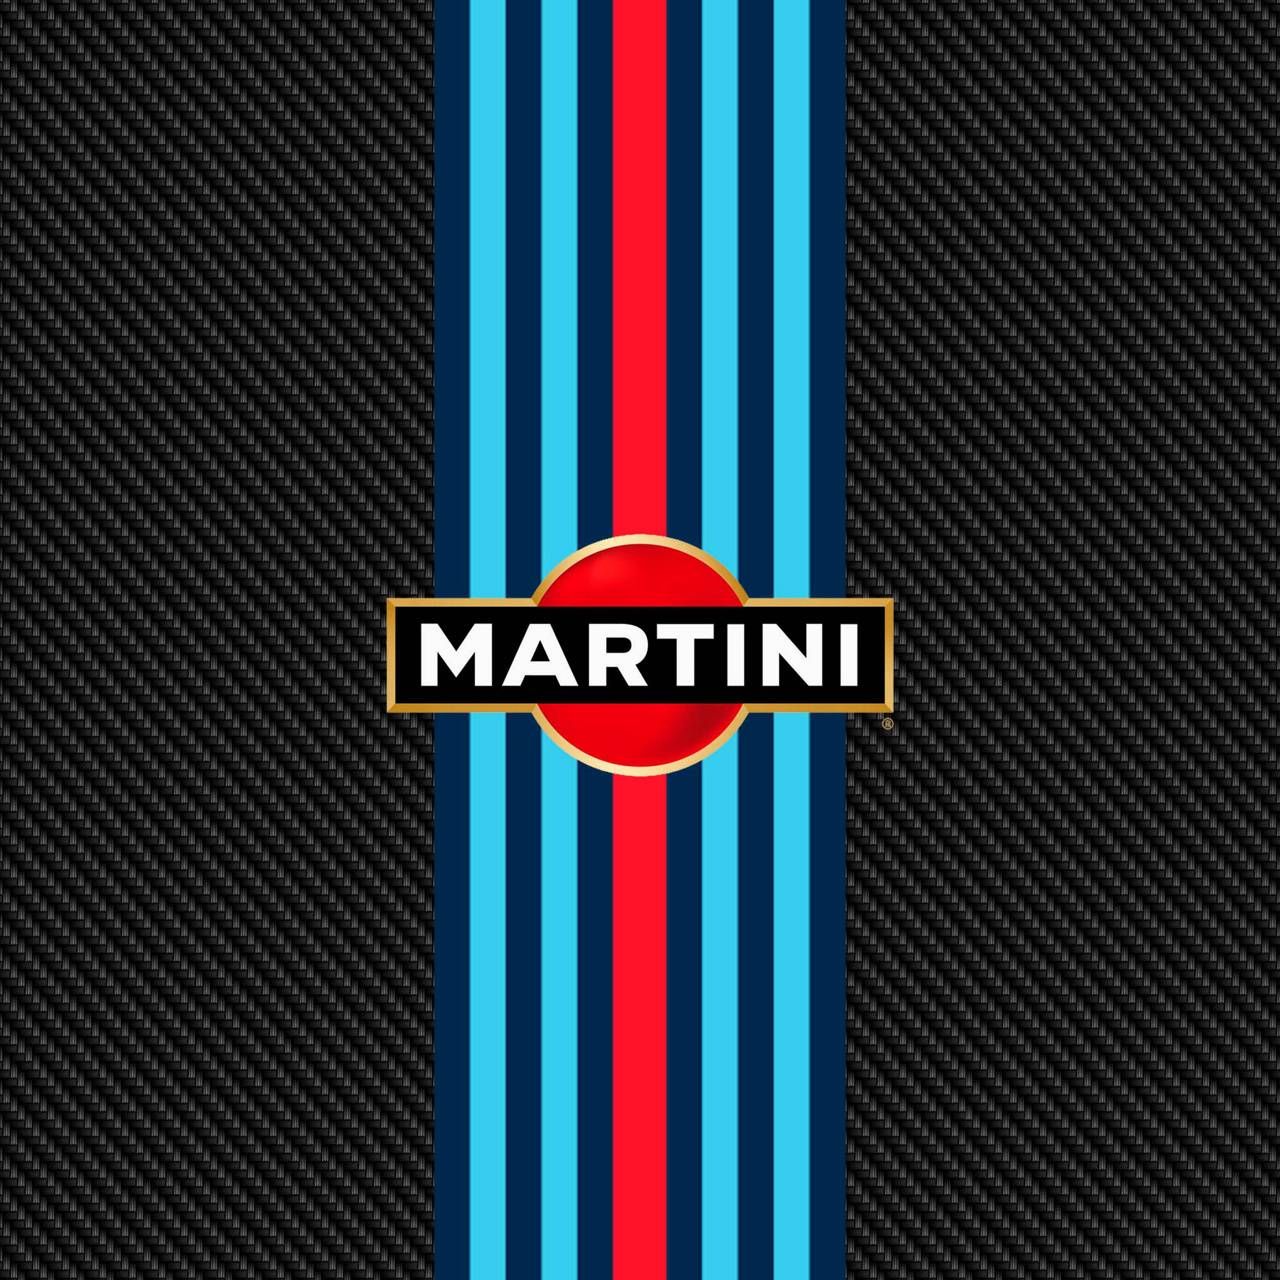 Martini Carbon 2 wallpaper by bruceiras em 2021. Auto, Stickers, Carros